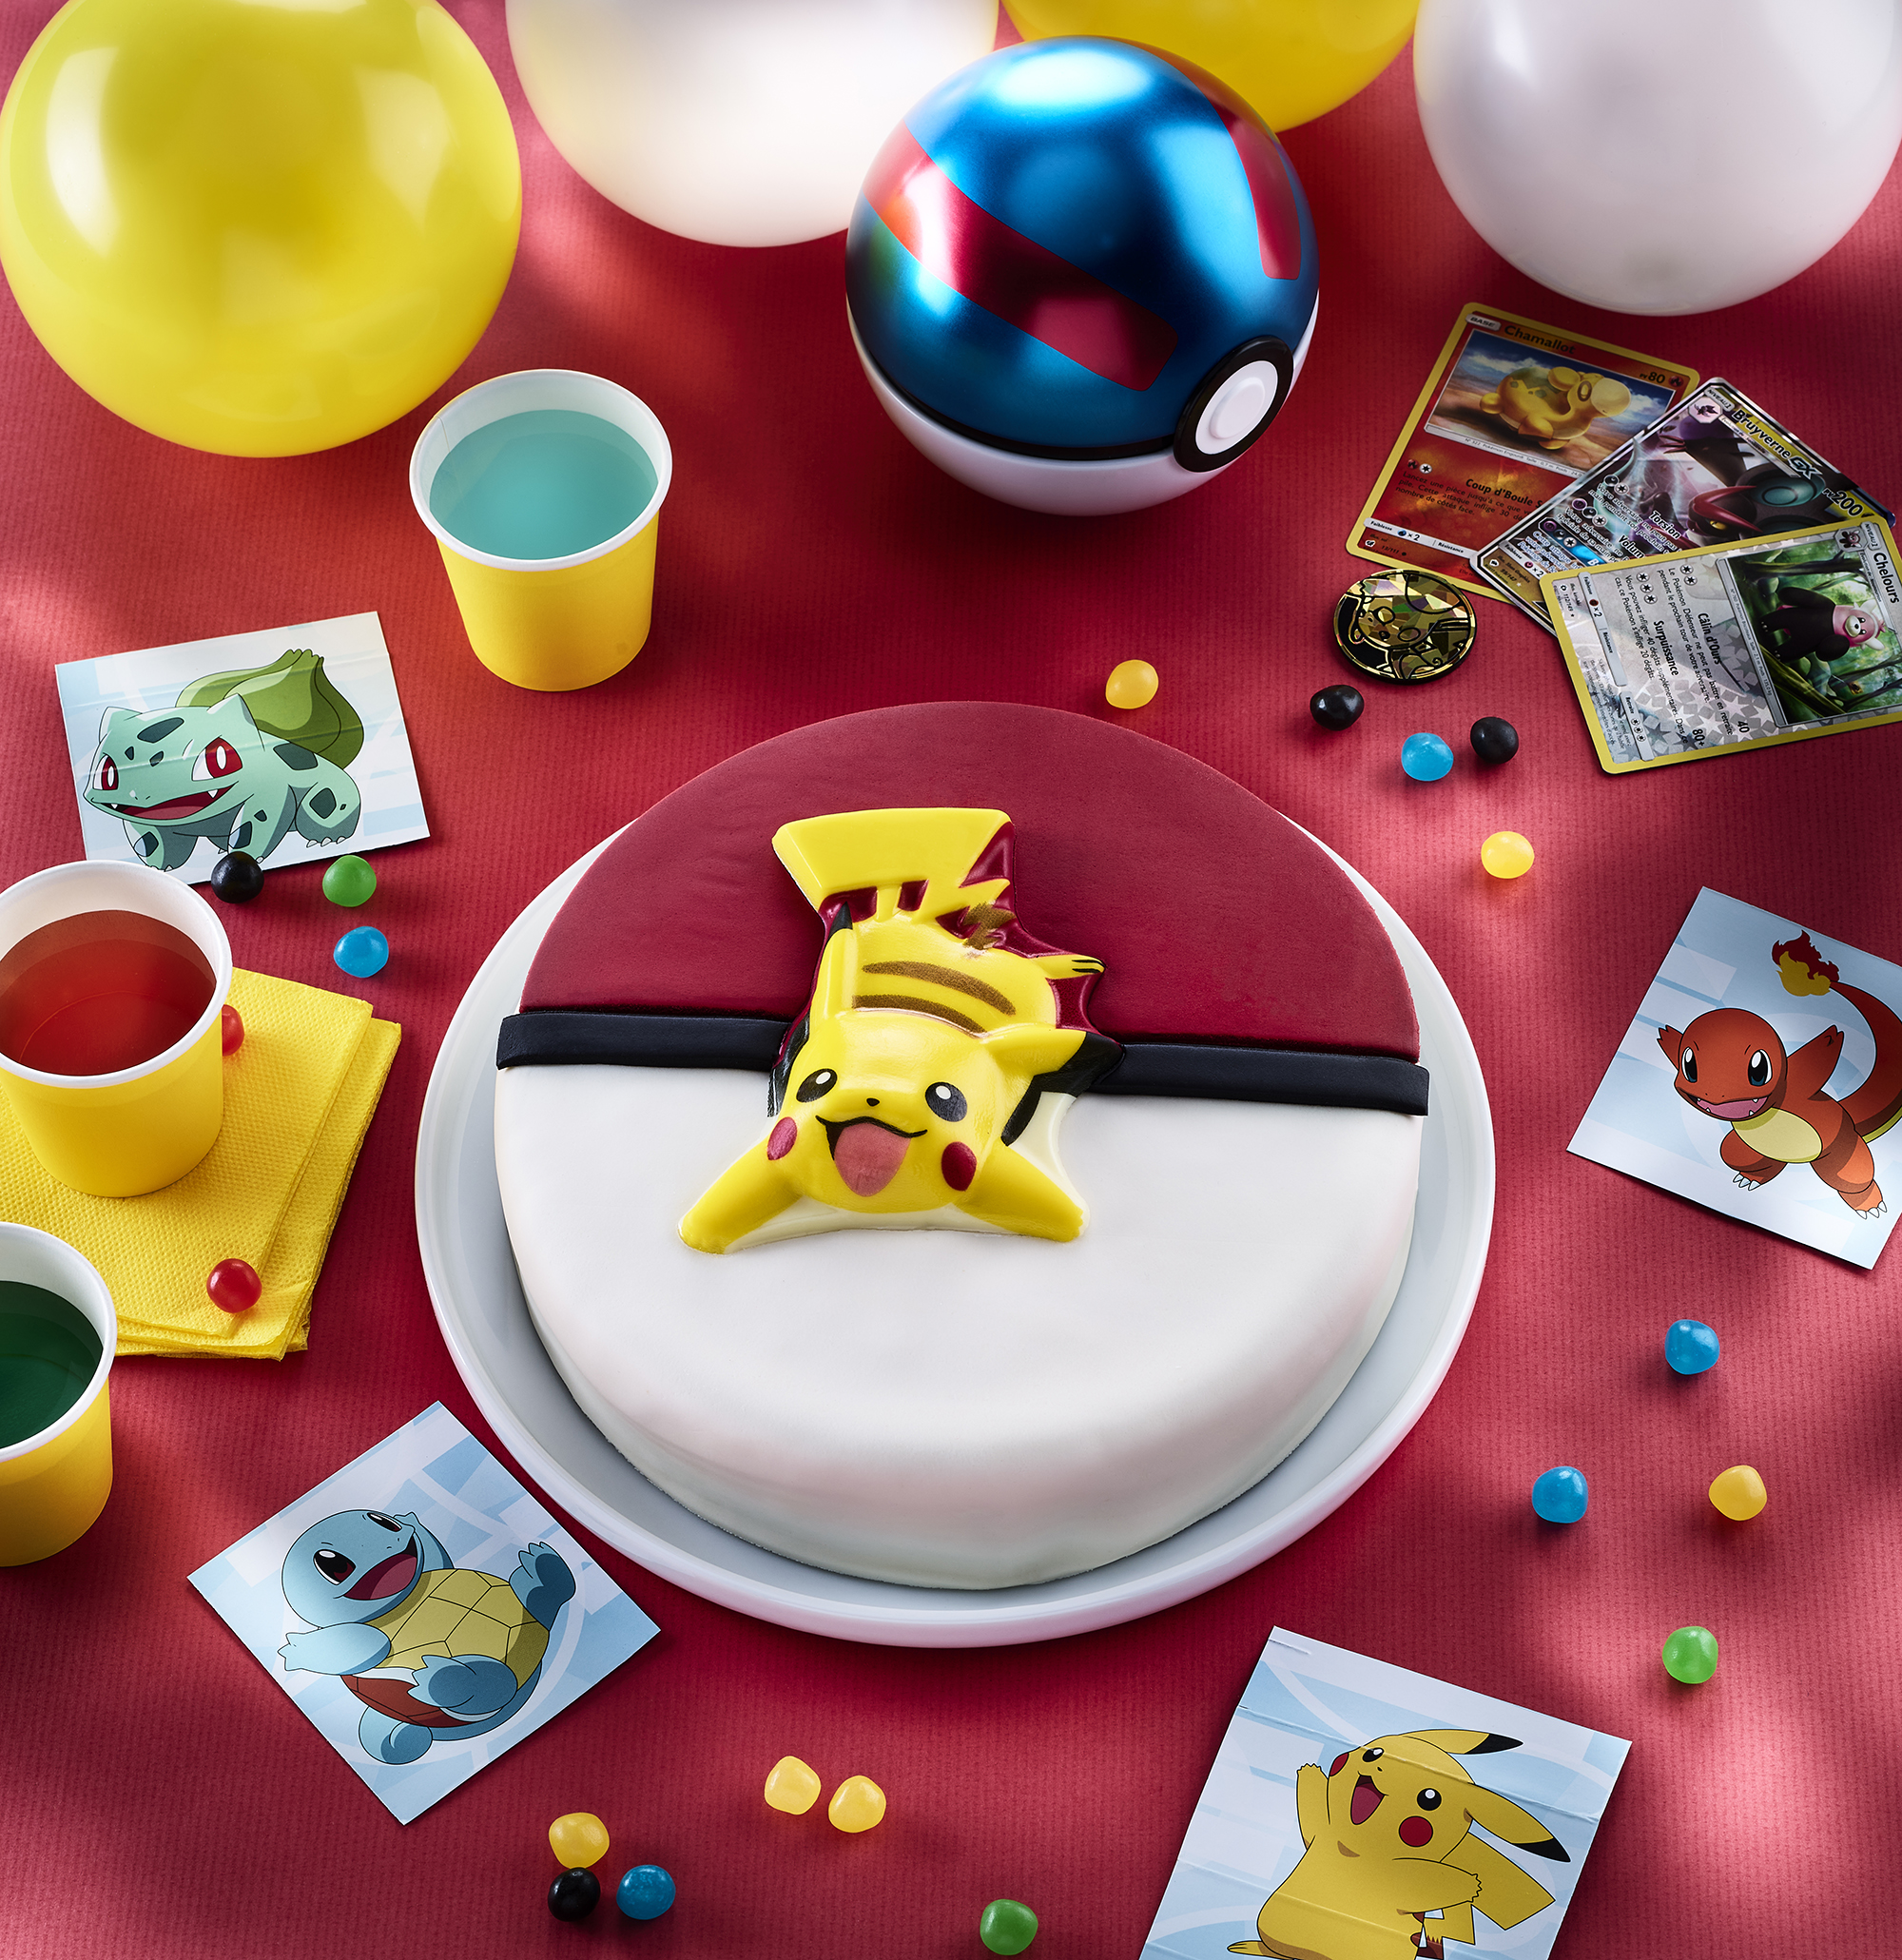 Gâteau au chocolat Pokémon Pikachu, gâteau Pikachu en pâte à sucre